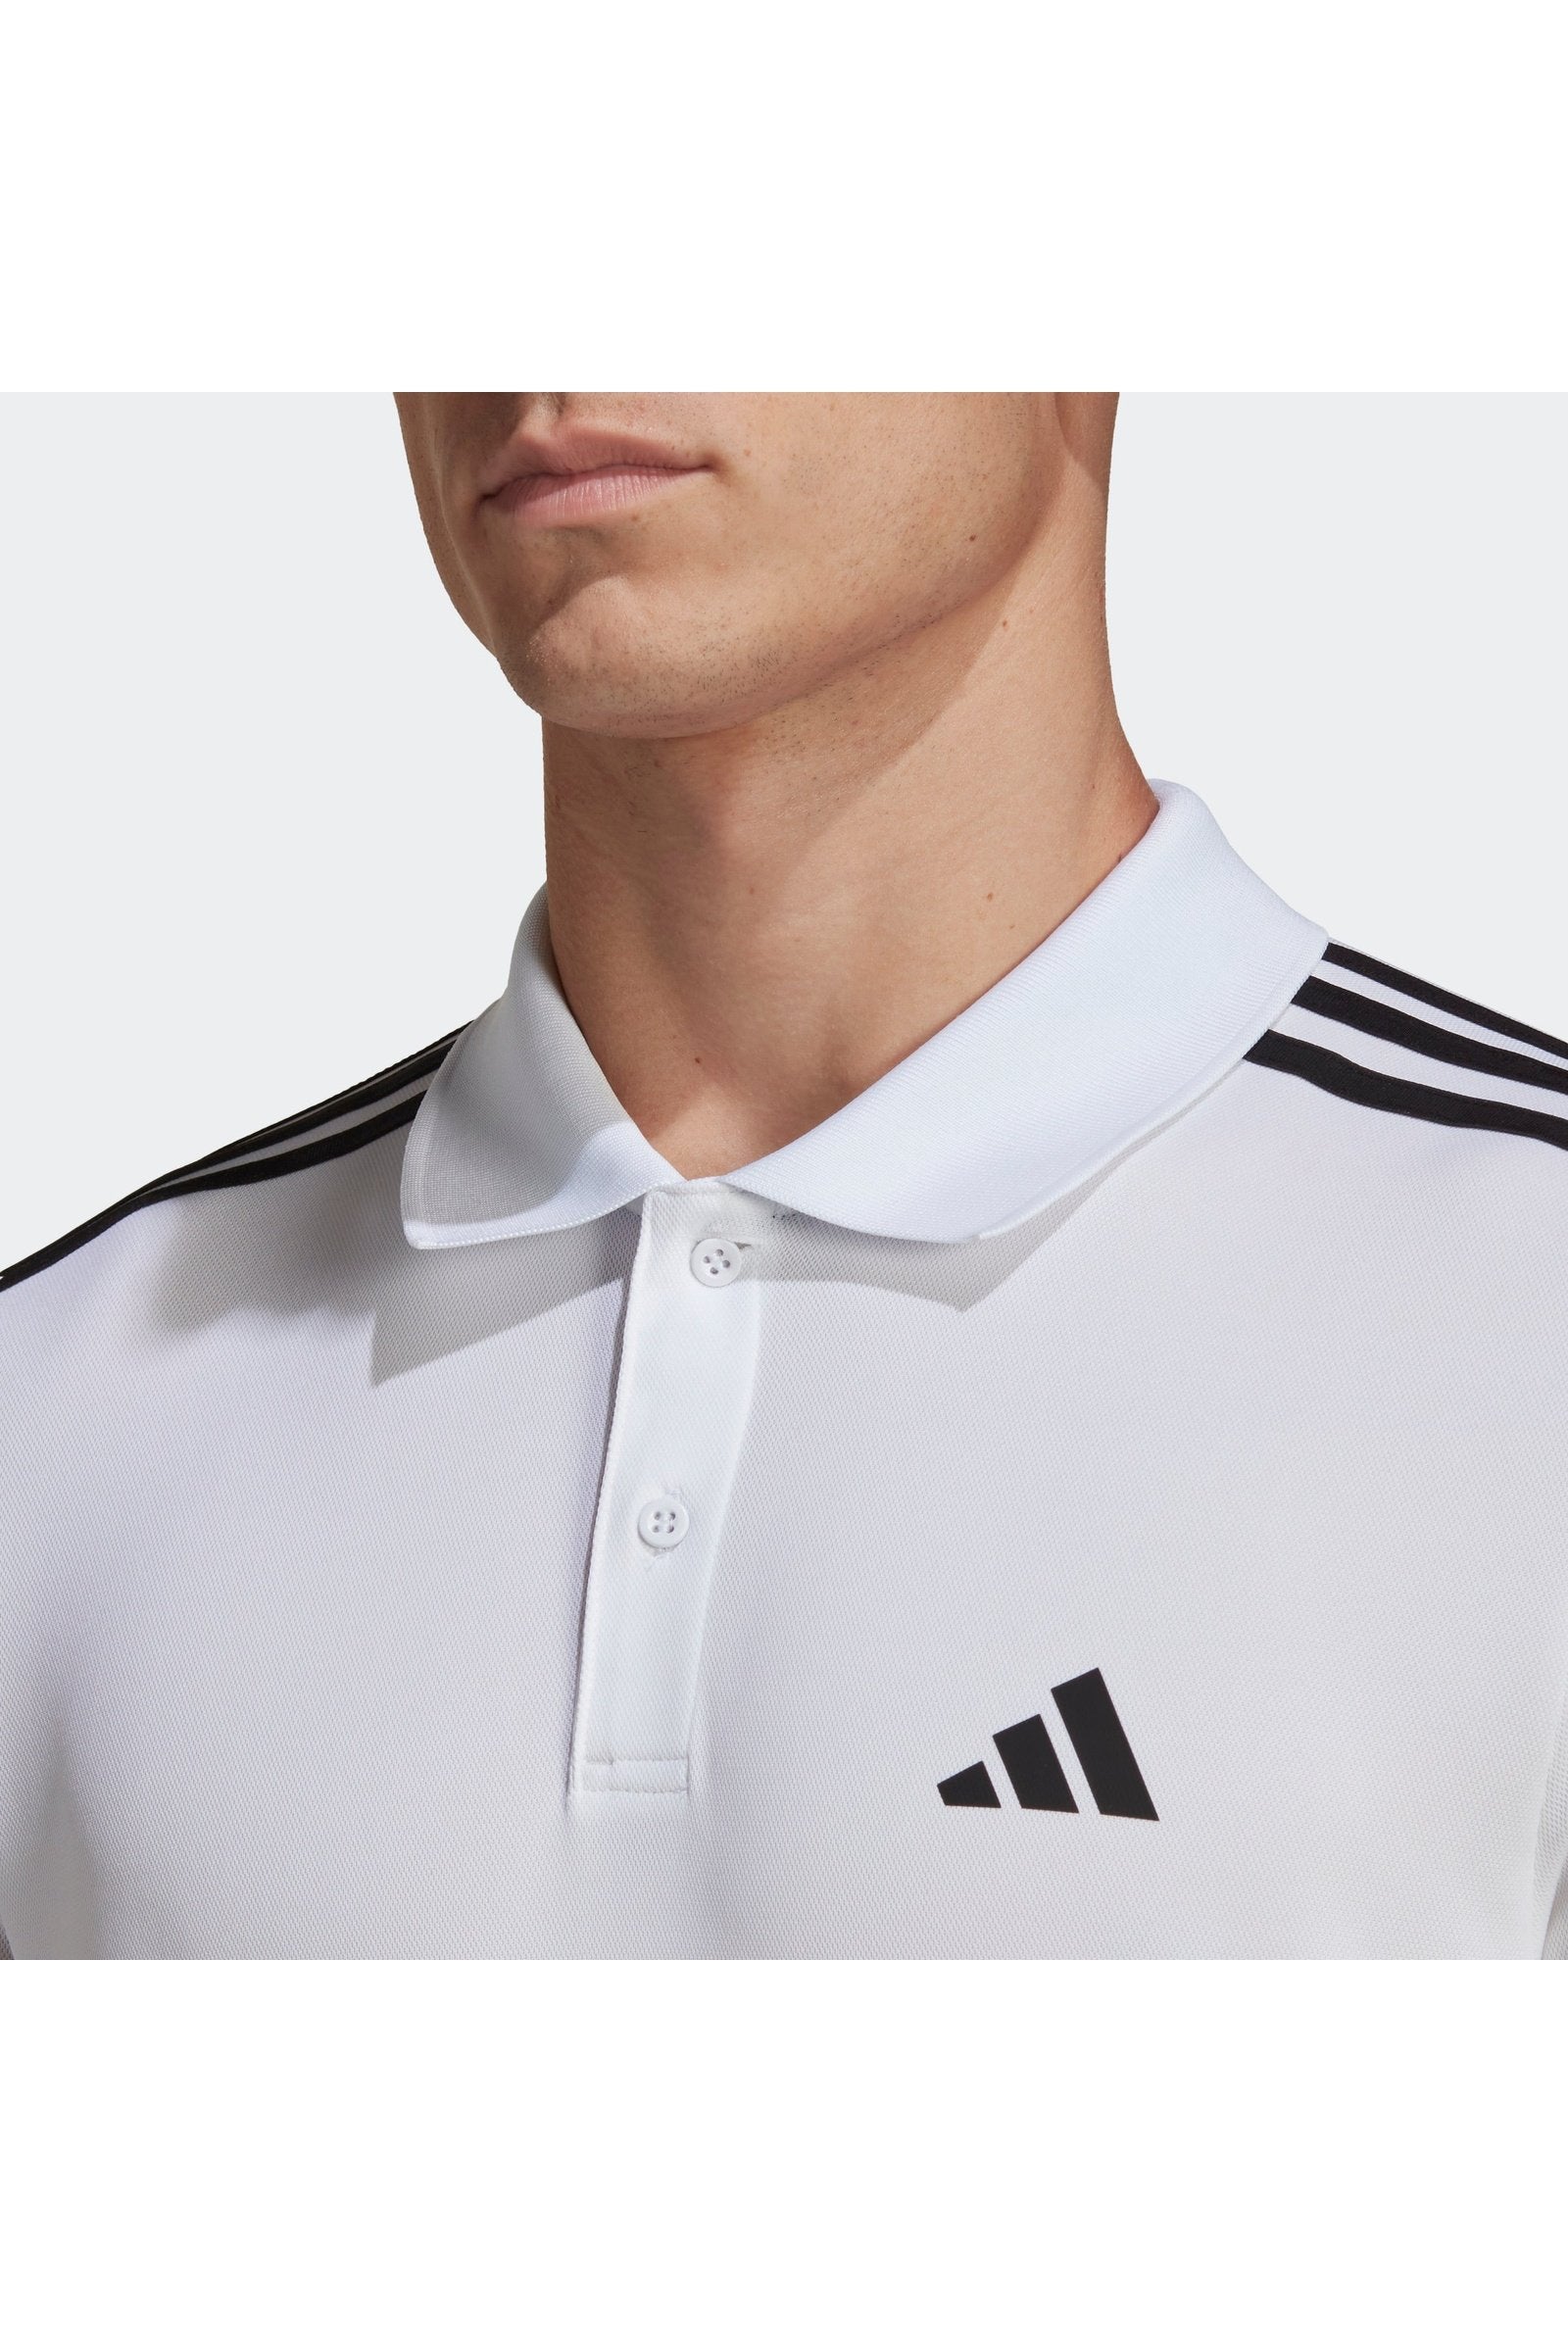 חולצת פולו לגברים TRAIN ESSENTIALS PIQUÉ 3-STRIPES בצבע לבן ושחור